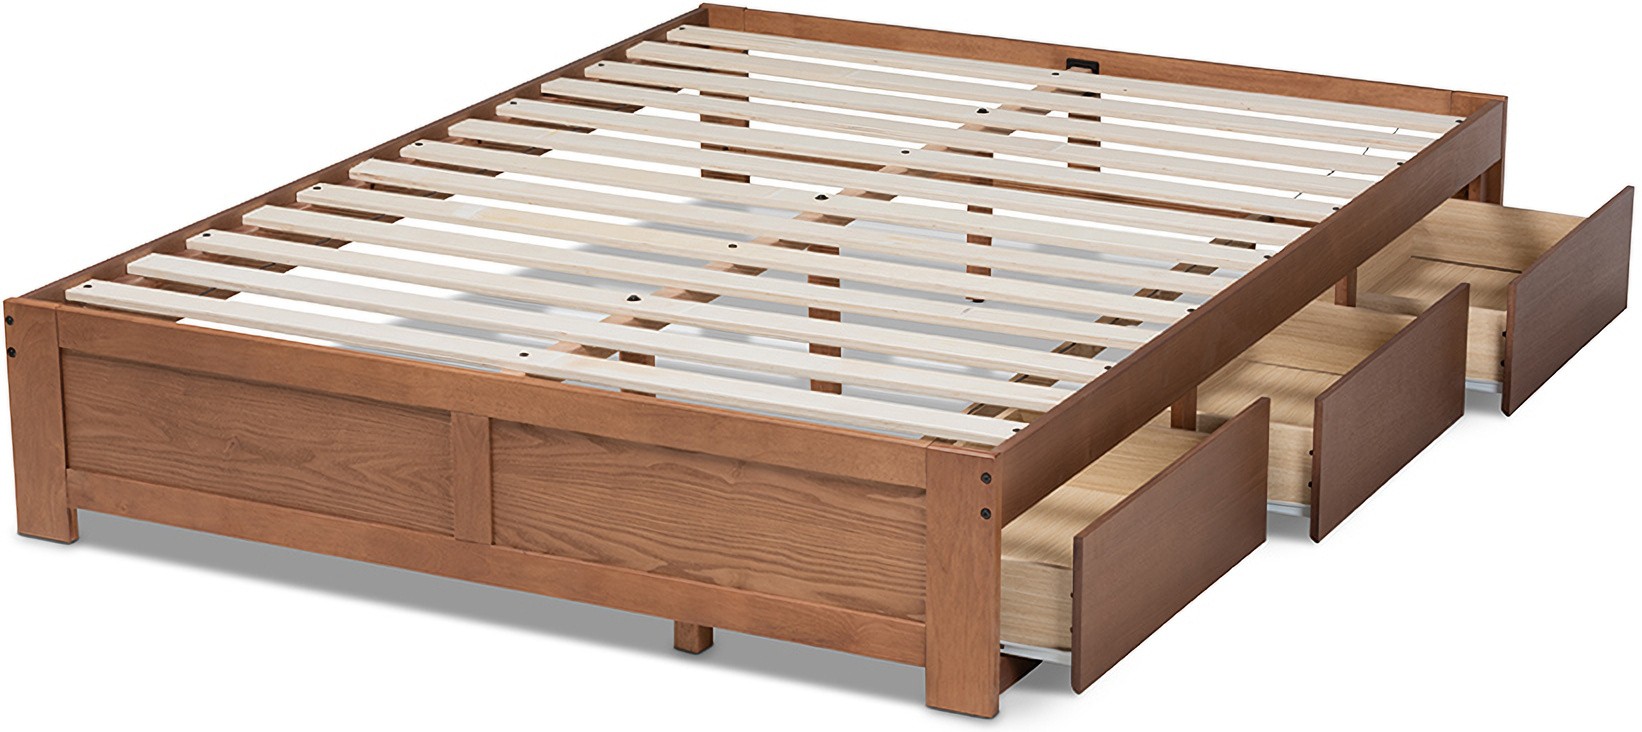 Platform Storage Bed Frame, Full Size Platform Bed Frame With Storage Drawers